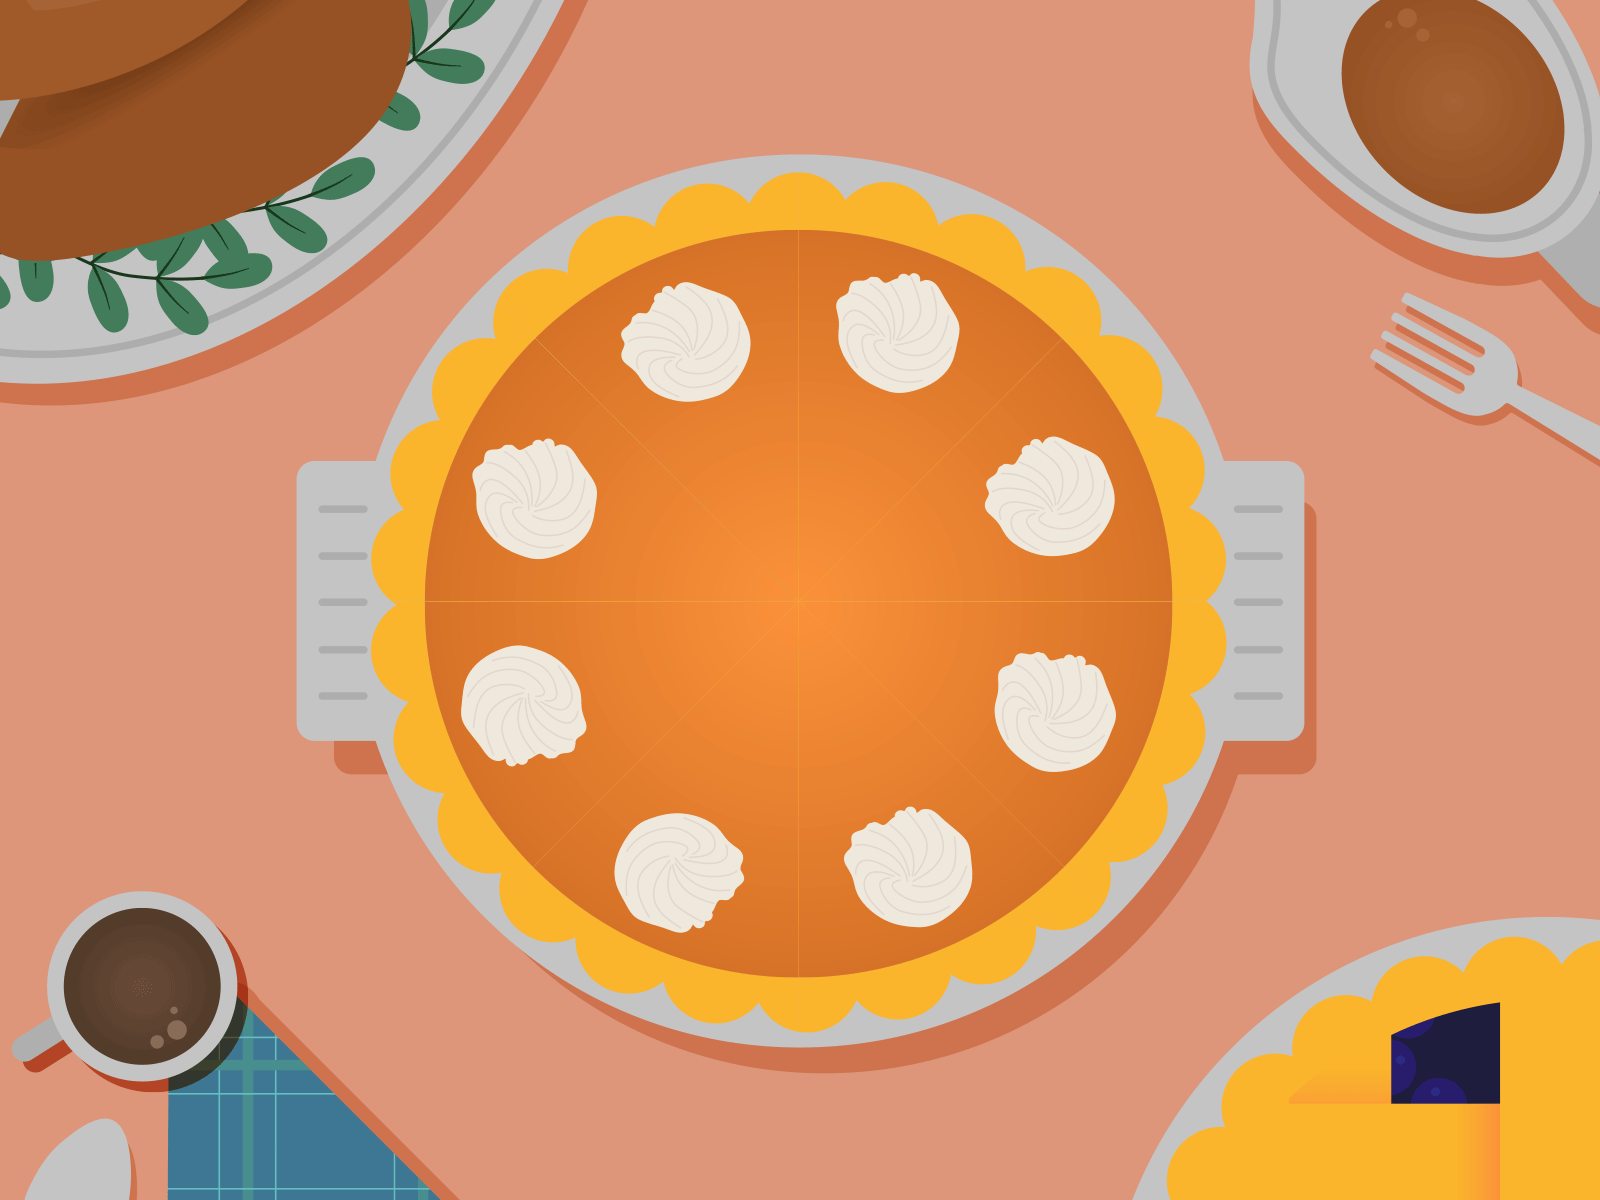 Thanksgiving pumpkin pie animation dinner logo reveal pumpkin pie slice of pie social graphic thanksgiving turkey dinner